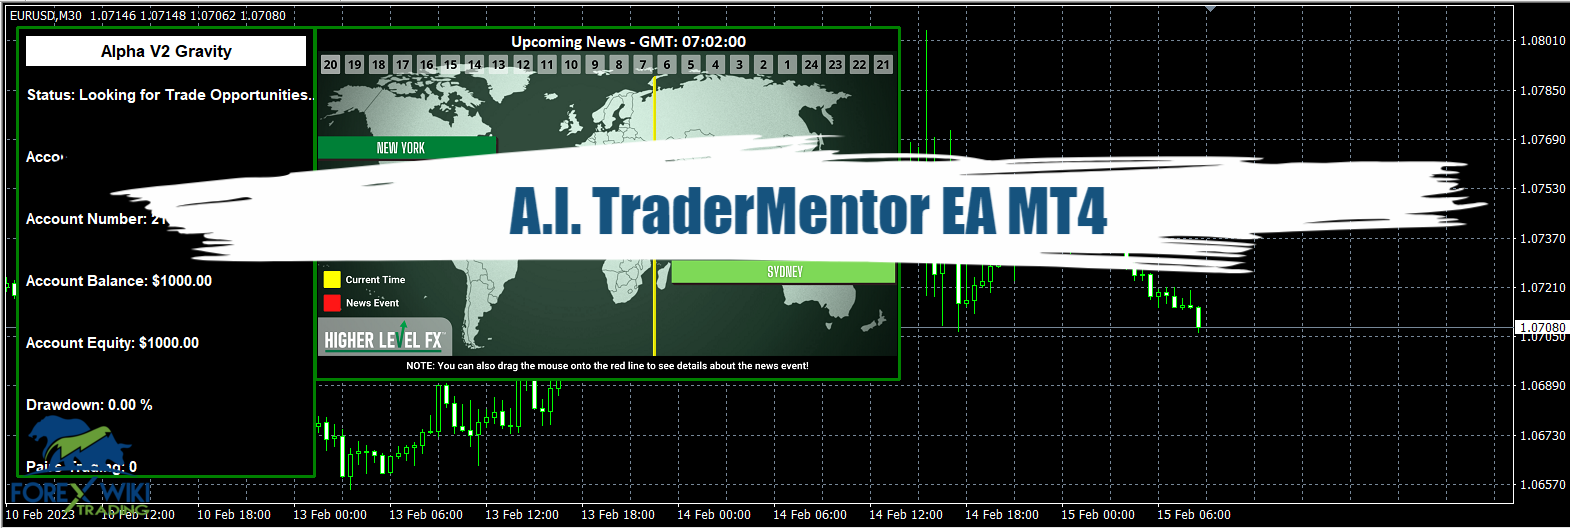 A.I. TraderMentor EA MT4 - Free Download 16